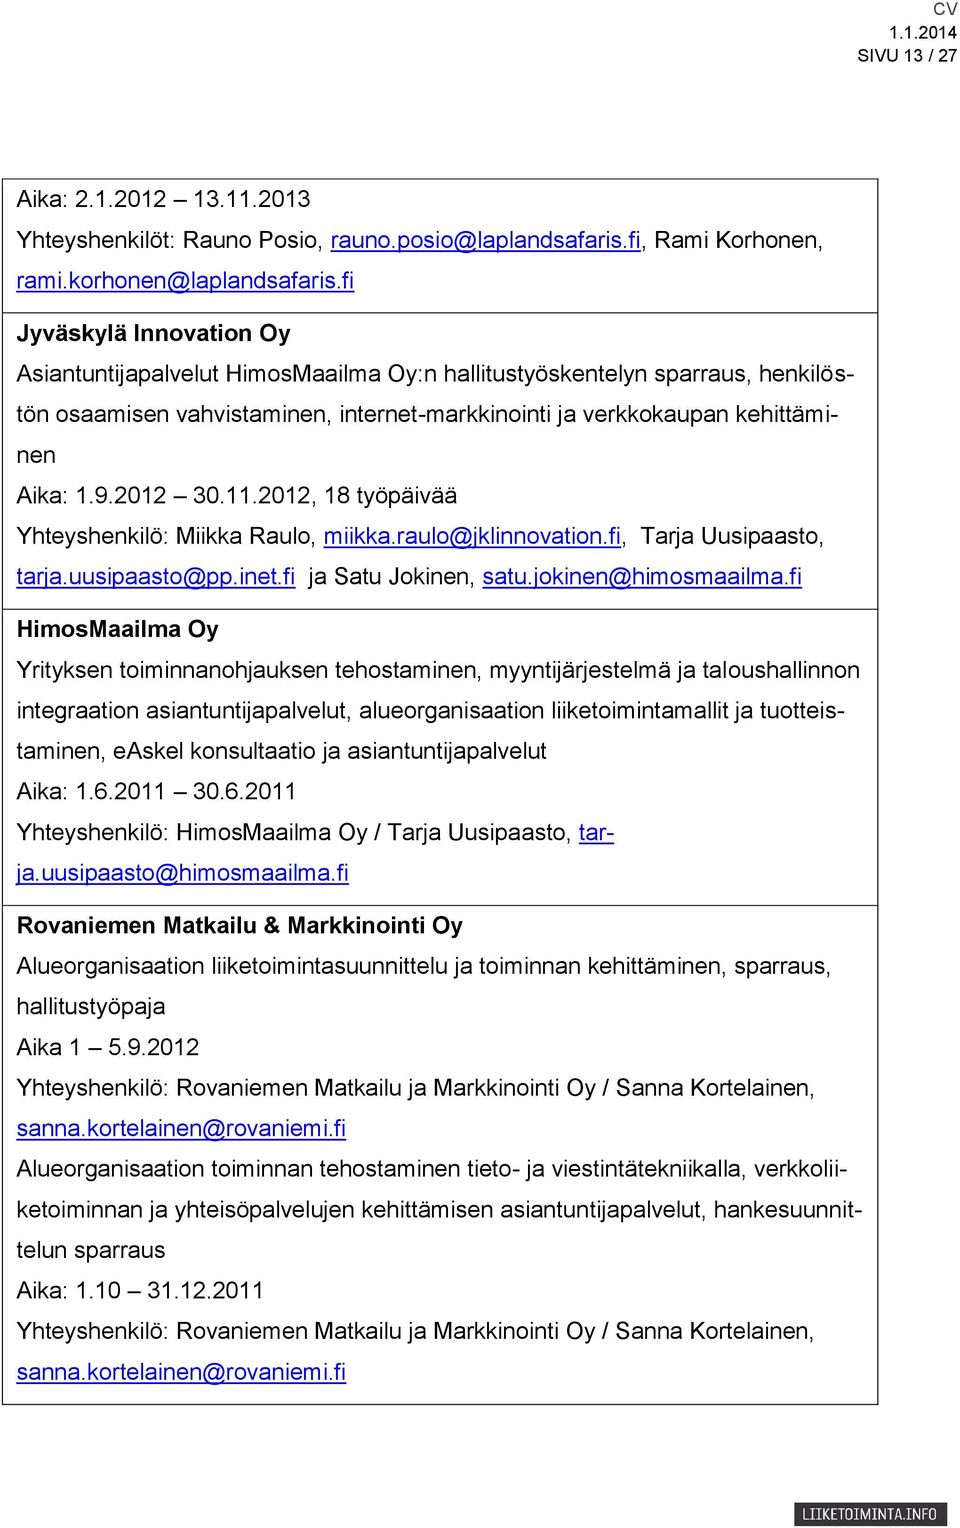 2012 30.11.2012, 18 työpäivää Yhteyshenkilö: Miikka Raulo, miikka.raulo@jklinnovation.fi, Tarja Uusipaasto, tarja.uusipaasto@pp.inet.fi ja Satu Jokinen, satu.jokinen@himosmaailma.